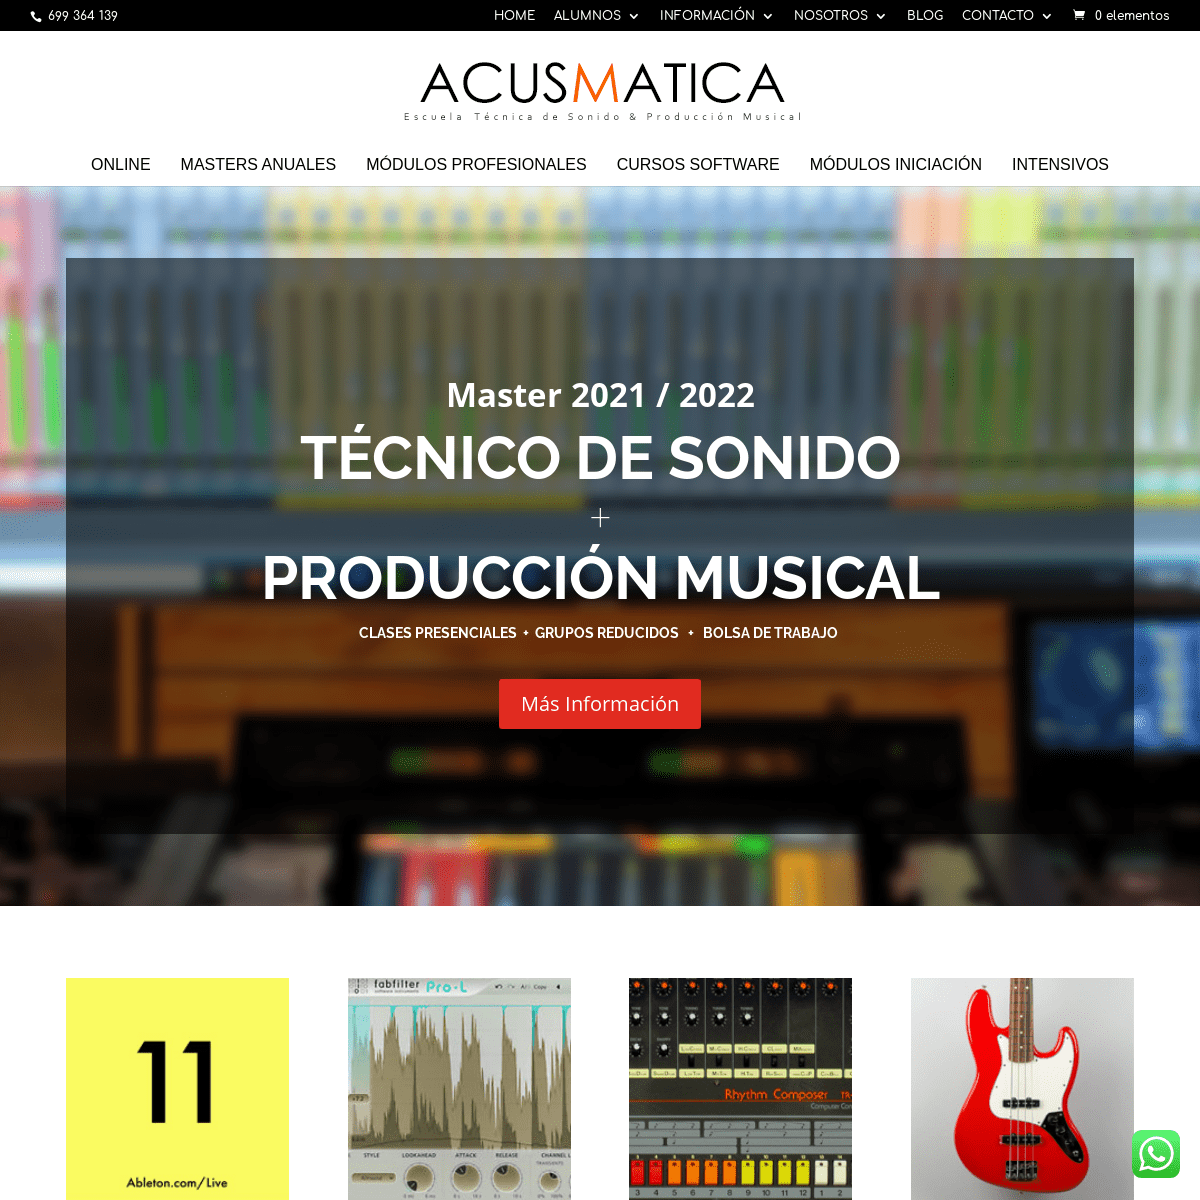 ACUSMATICA - Escuela de Sonido y ProducciÃ³n Musical